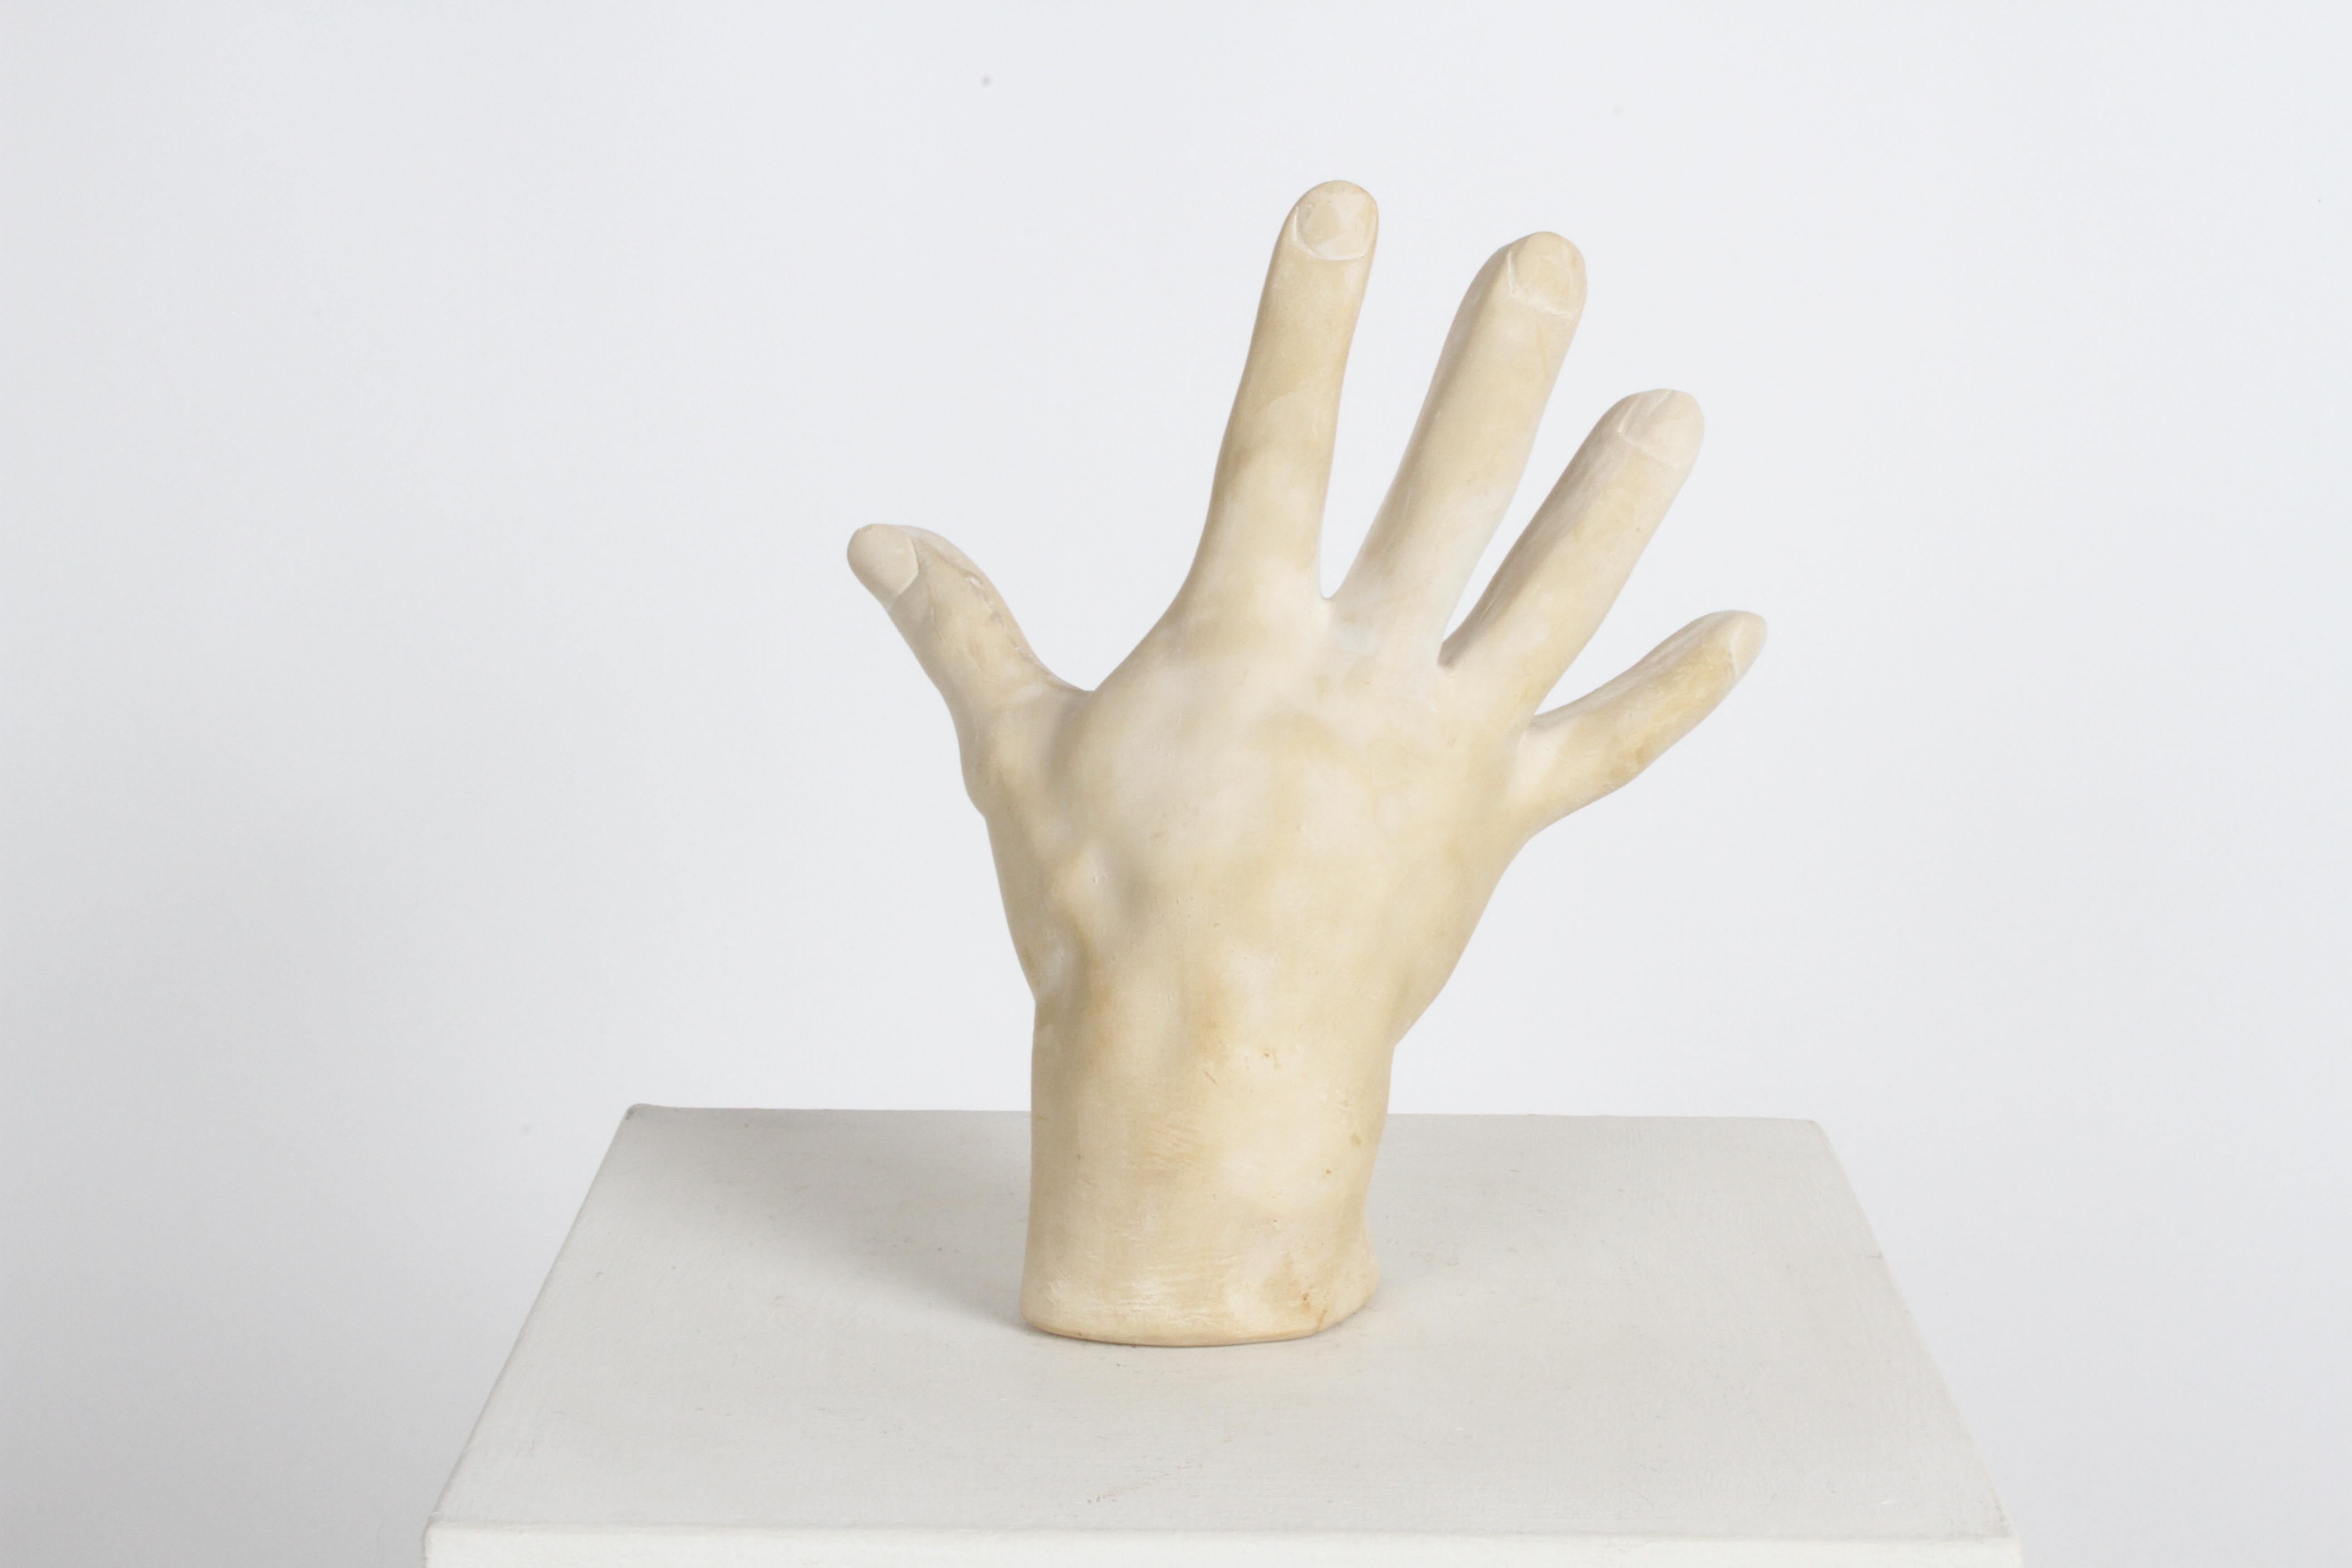 Sculpture de main en plâtre coulé, plus grande que nature, datant des années 1970. Possibilité d'étude de l'artiste ou de la main, dans le style de John Dickinson.
Le plâtre est légèrement teinté de beige sur le plâtre blanc. Pas de cassures ou de